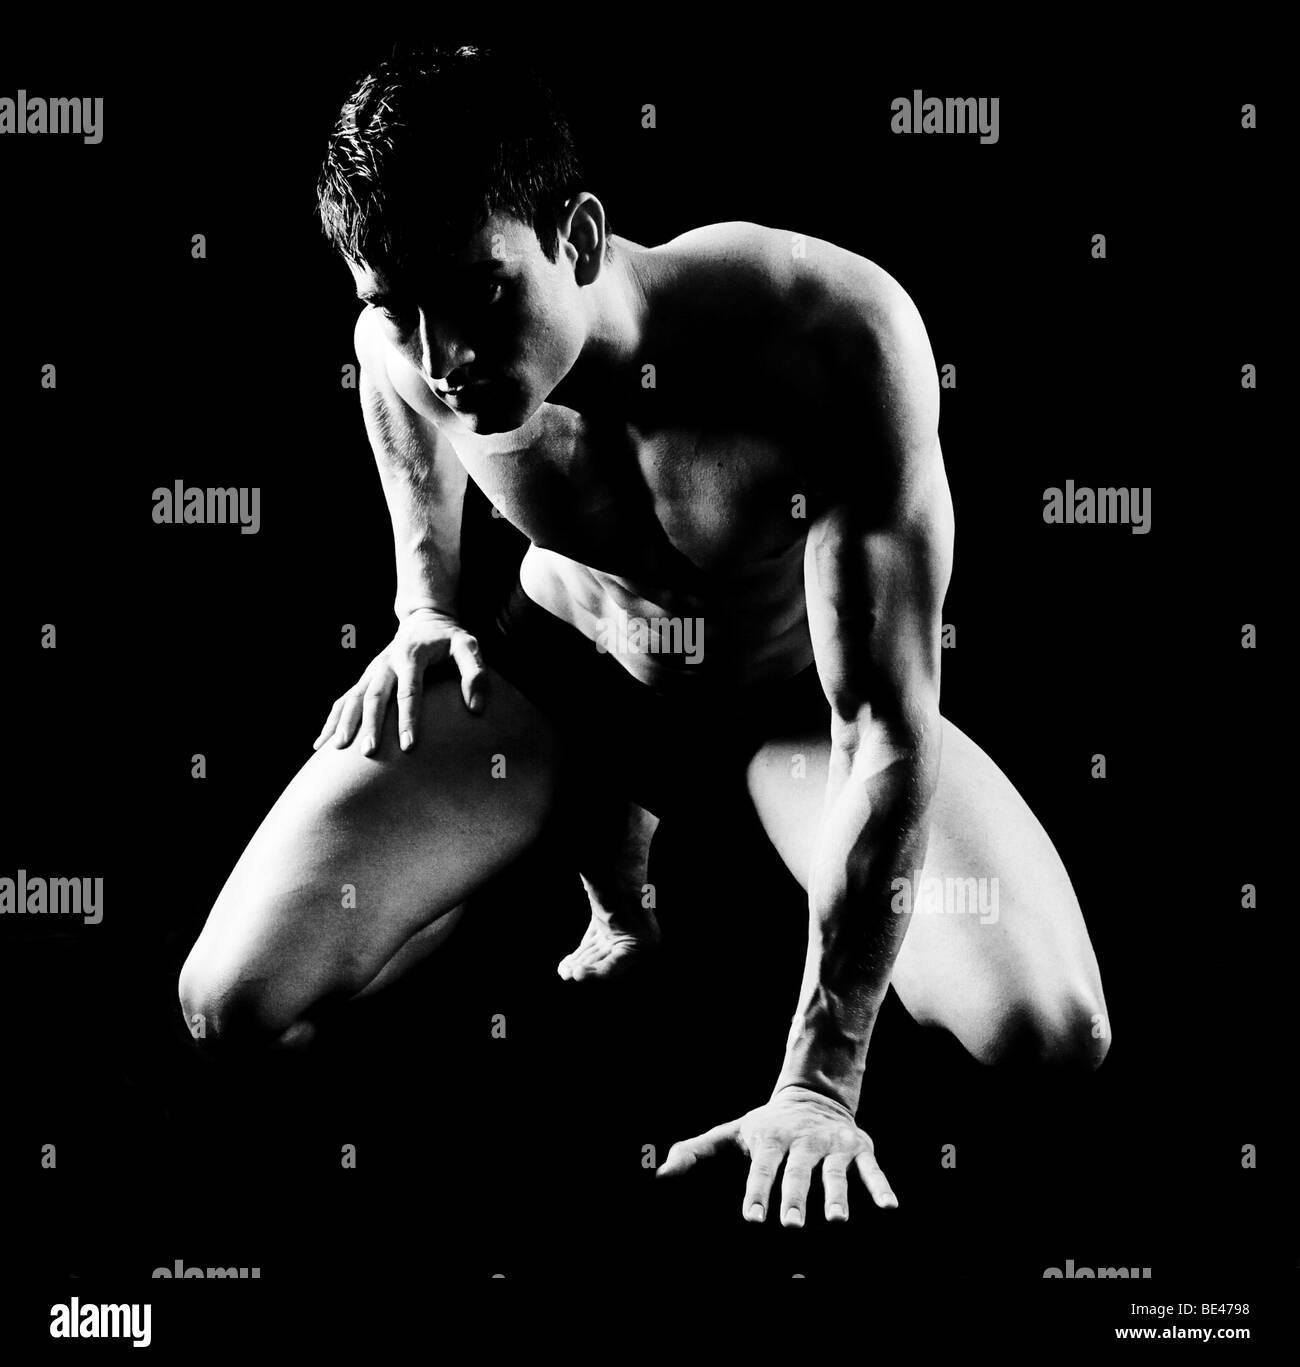 Junger Mann, topless Torsos, kniend, schwarz / weiß, teilweise nackt Stockfotografie Foto Foto